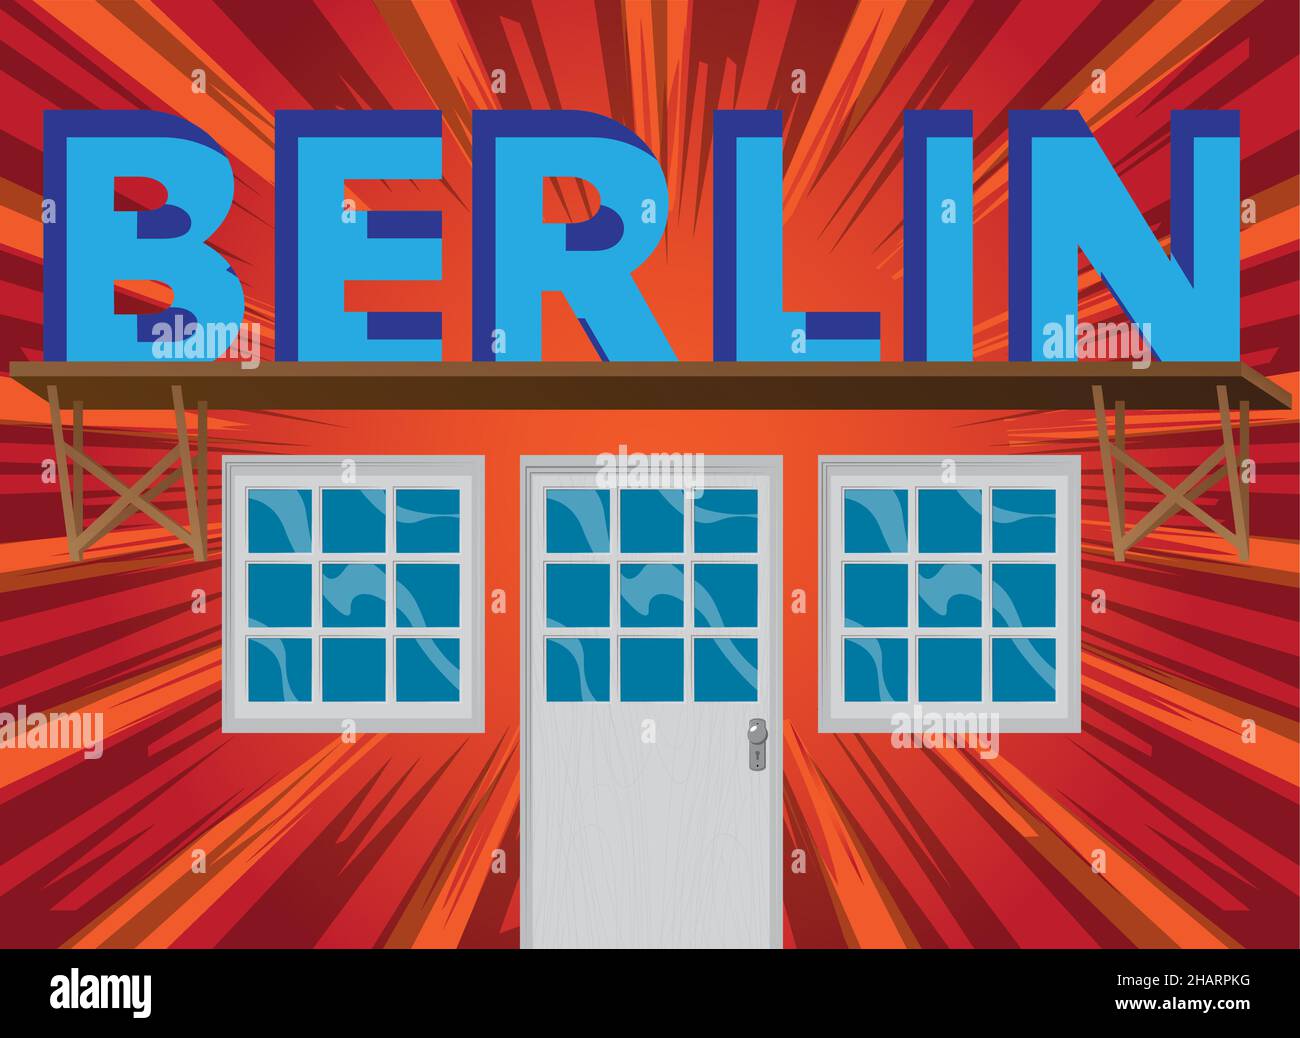 Berliner Text mit Hintertür. Bar, Cafe oder Drink Establishment Front mit Plakat. Stock Vektor